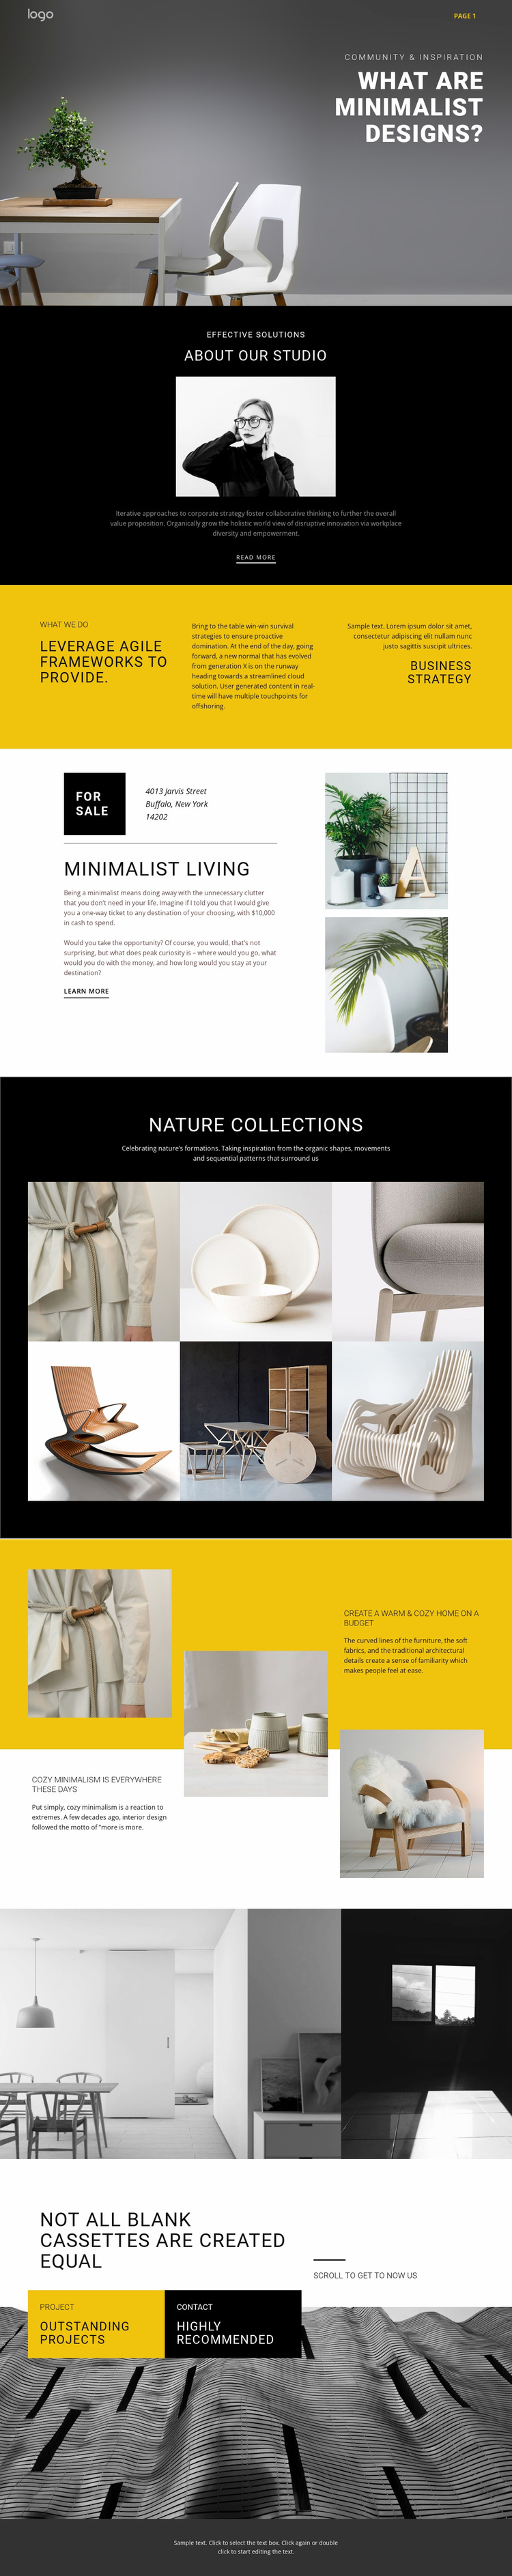 Minimalist designer interiors Website Design